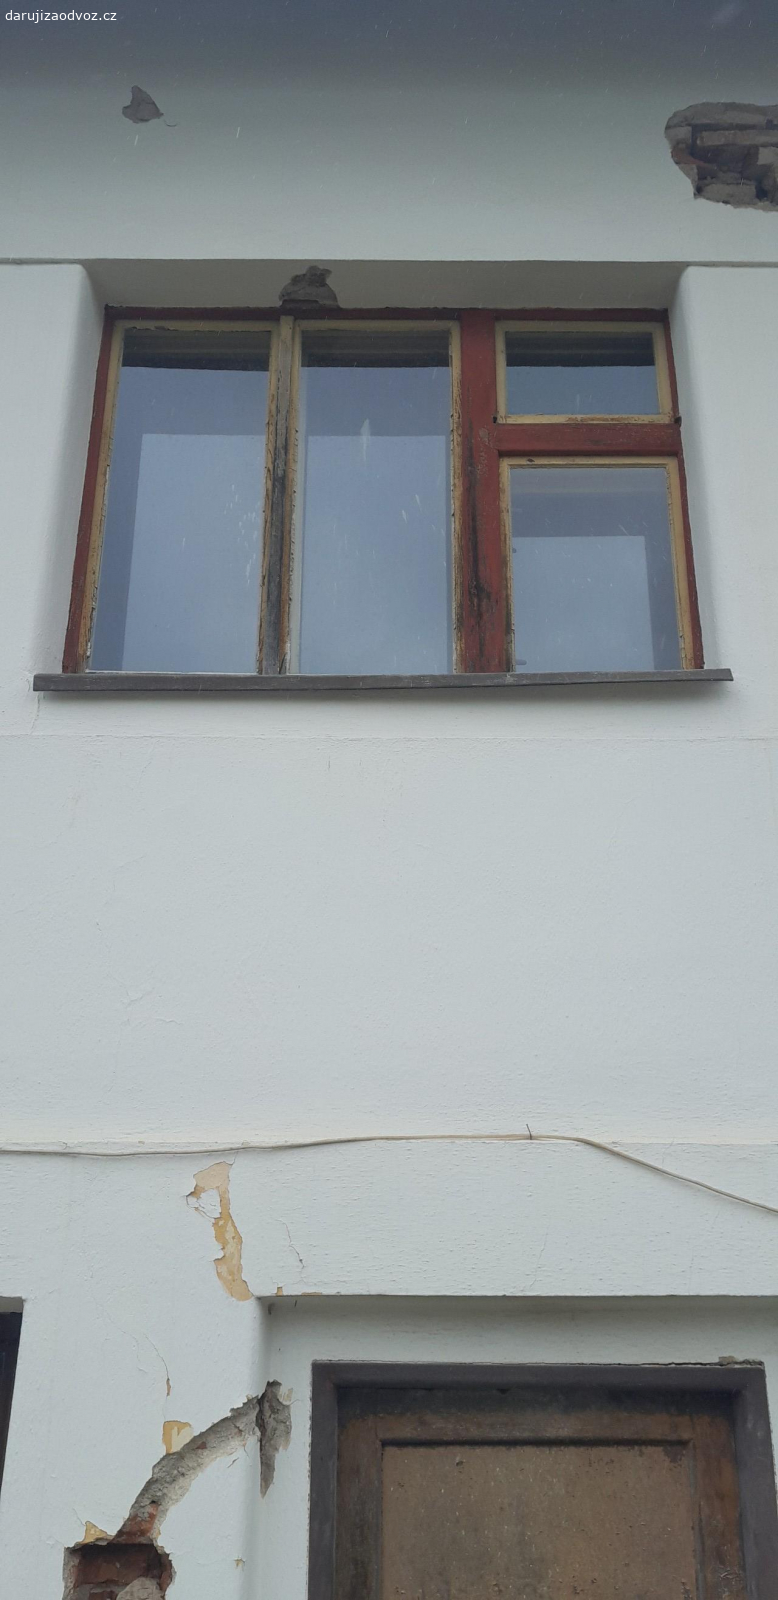 Okna špaletová a jednoduchá. Daruji stará špaletová a jednoduchá okna z rekonstruovaného domu. 
Špaletové okno - zděná špaleta - dvoukřídlé 122,5 x 151 cm... 2 ks, 121 x 150 cm... 1ks, 
Špaletové okno - dřevěná špaleta - tříkřídle 182 x 140... 2 ks, 
Špaletové okno - zděná špaleta - venkovní křídla otevírané ven - dvoukřídle 84,5 x 98 cm... 1 ks, 
Jednoduché okno - tříkřídlé 124 x 107 cm... 1ks, 
Jednoduché okno - křídla otevírané ven - tříkřídlé 160 x 117 cm... 2 ks, 
Světlík - pevný 160 x 54,5 cm... 2 ks 
Rozměry jsou udávané šířka x výška. U špaletových oken je uveden rozměr vnitřního rámu. U dvou oken je rozbité sklo a u některých nefunkční rozvora. Nutné opravy. Rám i křídla v dobrém stavu, nerozkližená. Okna daruji za pomoc při demontáži nebo odvoz - dohoda.